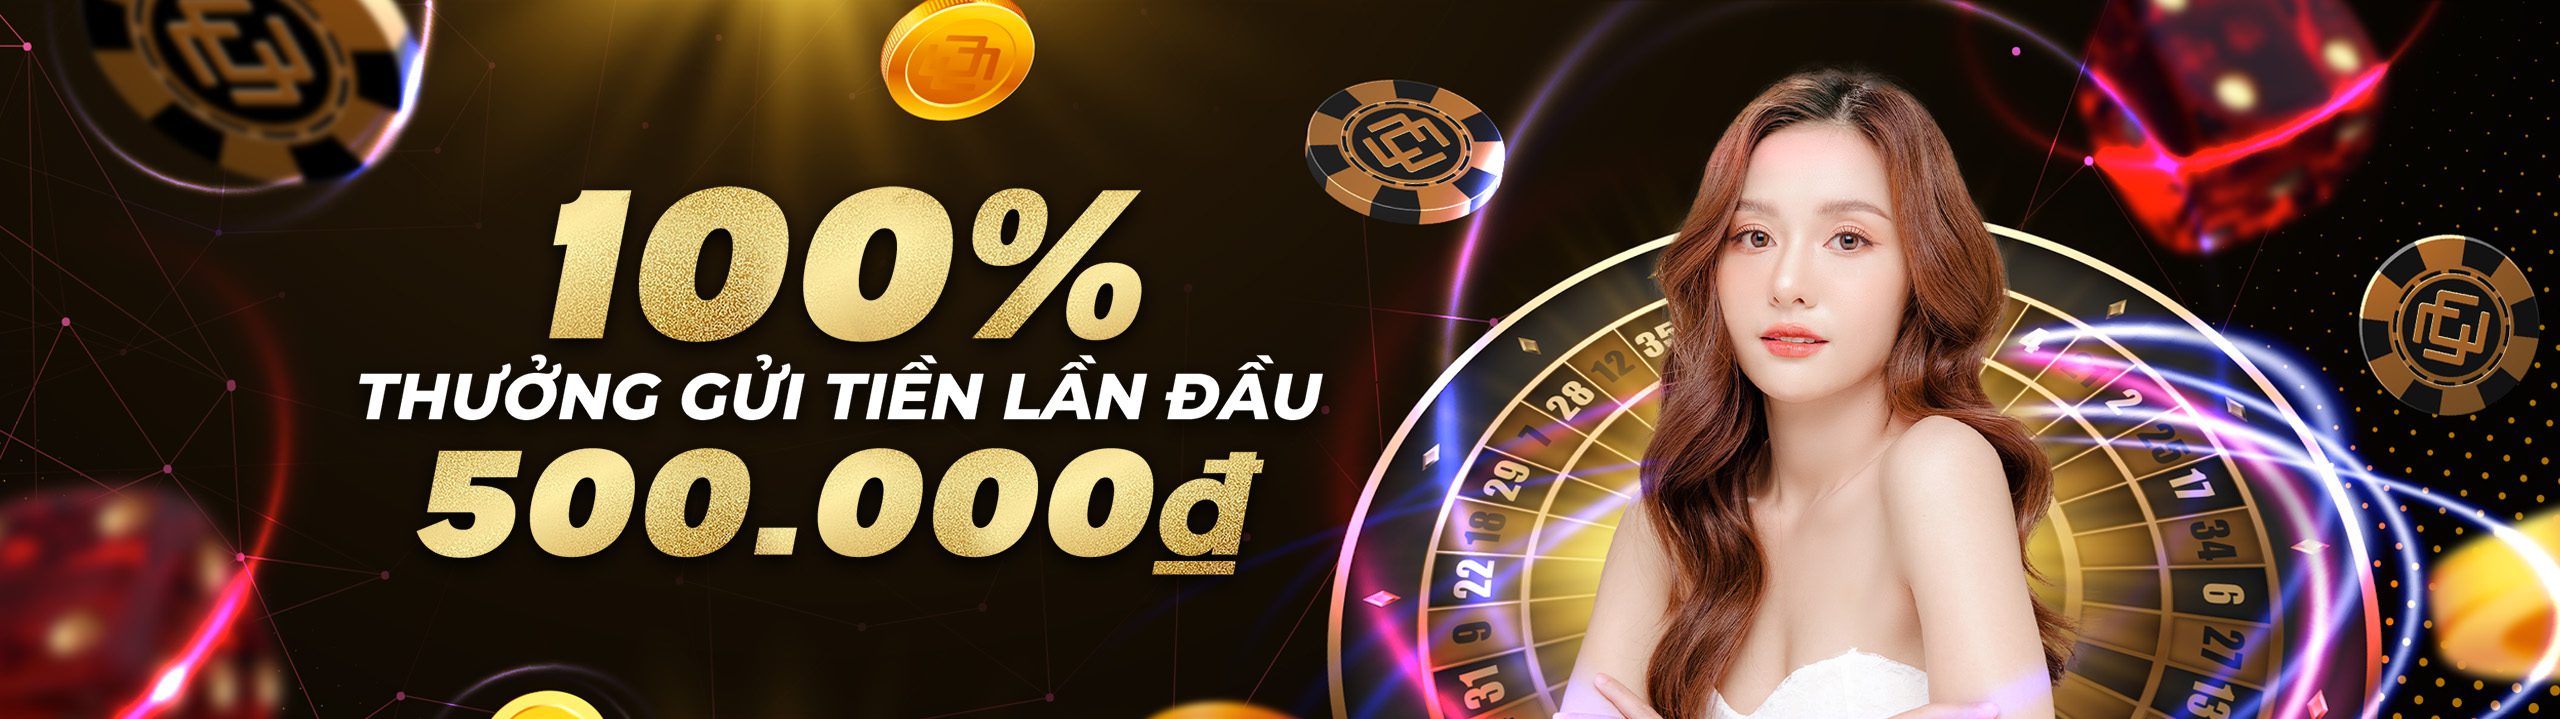 Casinomcw Gửi tiền lần đầu – Casino trực tuyến: thưởng 100% lên đến 500.000 VND